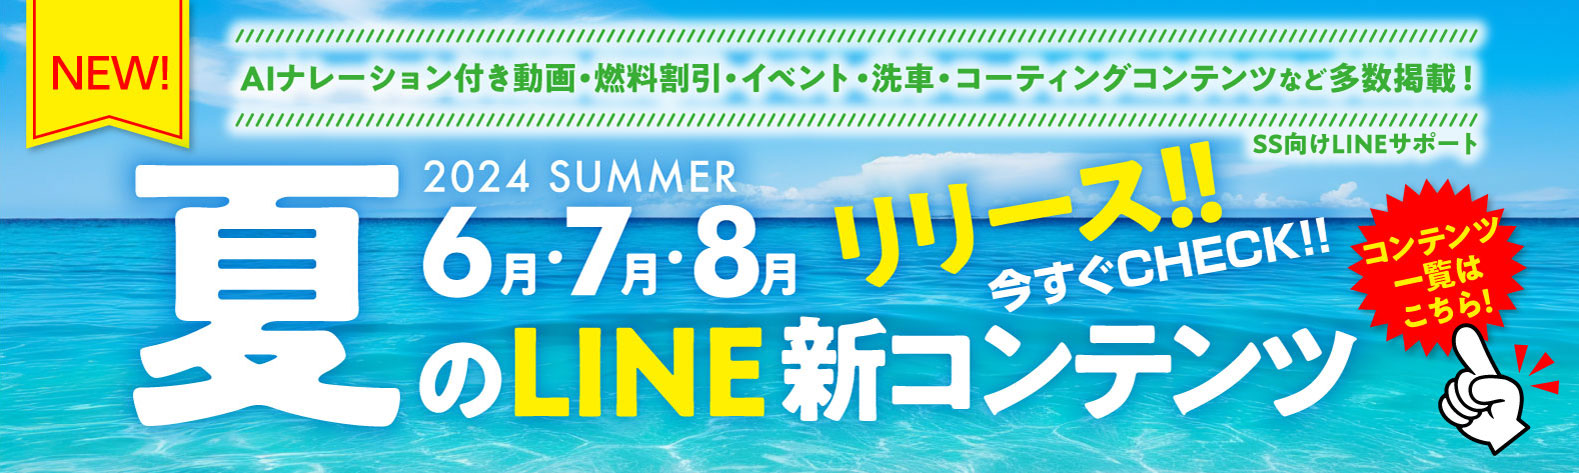 24夏6月7月8月 SS向けLINE新コンテンツ